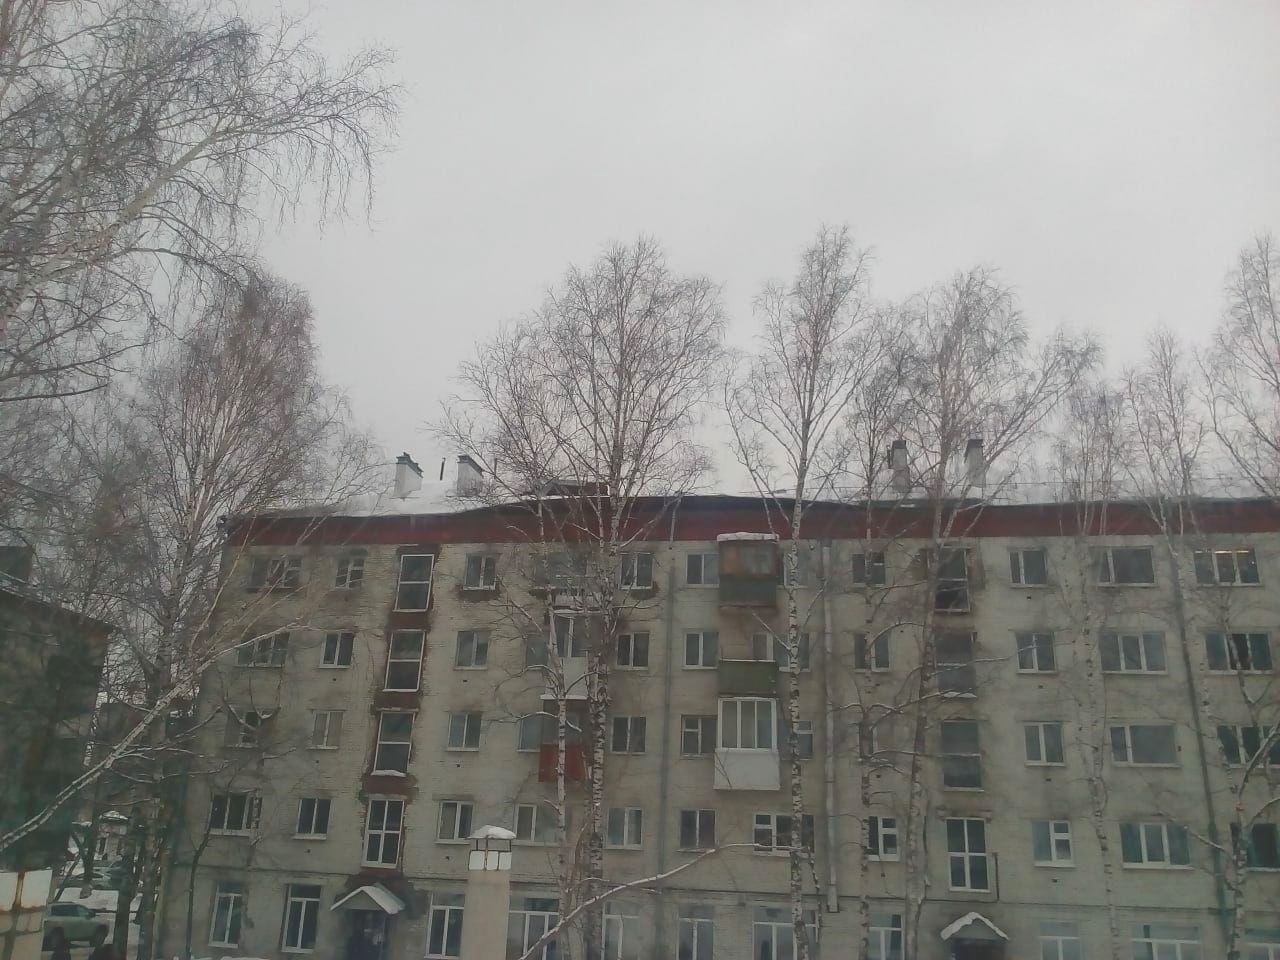 Происшествия, Томские новости, поликлиника обрушилась кровля упала кровля здание пострадало медсанасть чистить снег Томская поликлиника, находящаяся в здании, где ранее обрушилась часть кровли, работает в штатном режиме